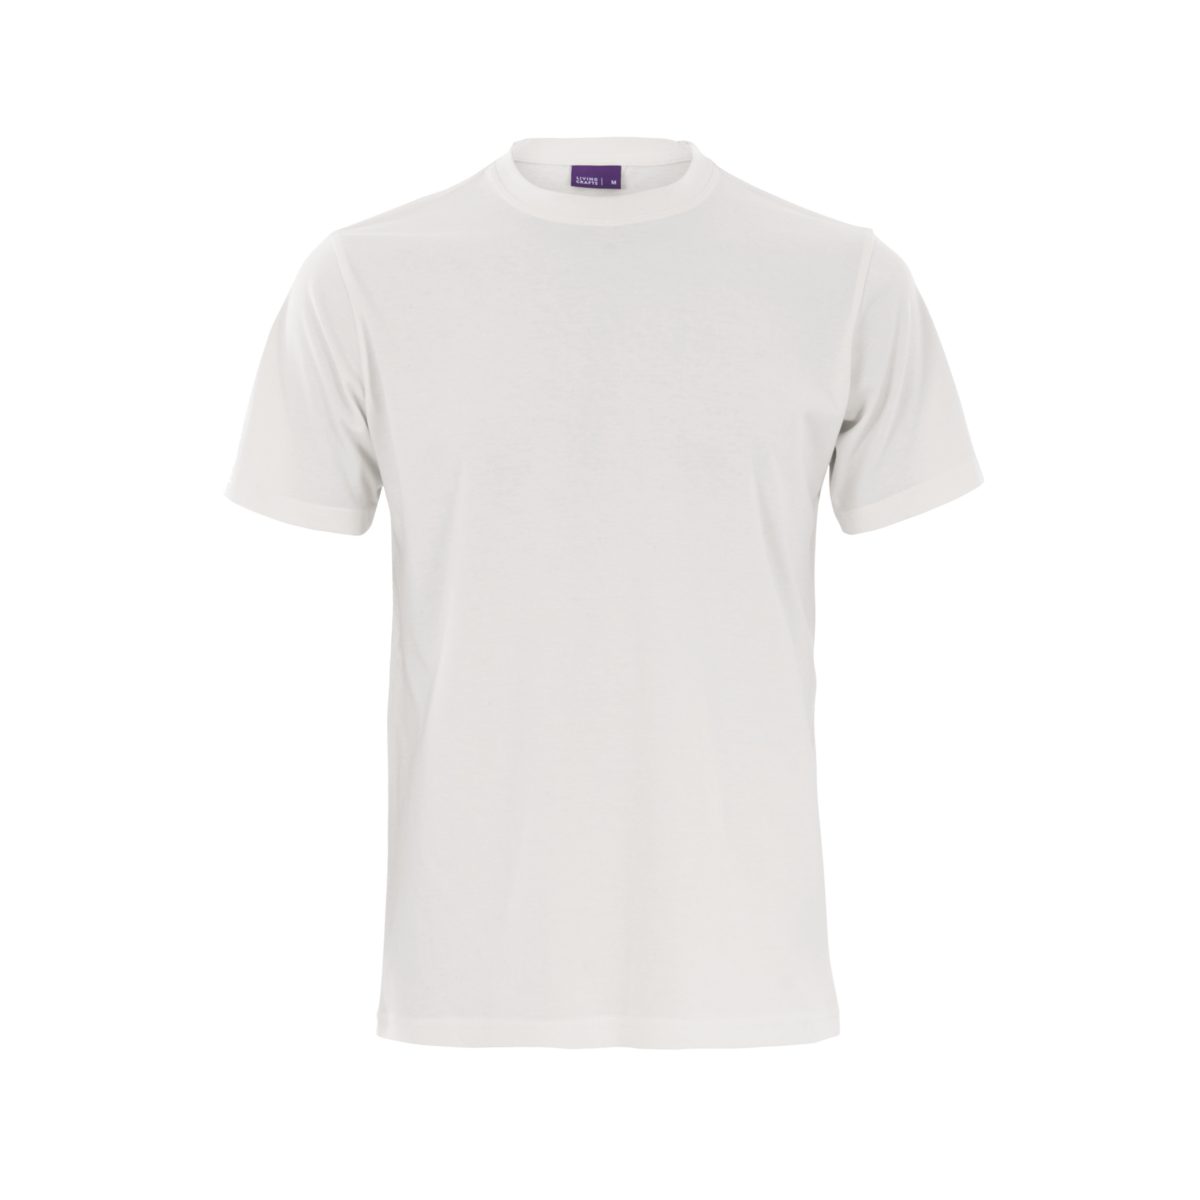 LIVING CRAFTS T-Shirt CLARK anschmiegsames Weiches, White Jersey Single